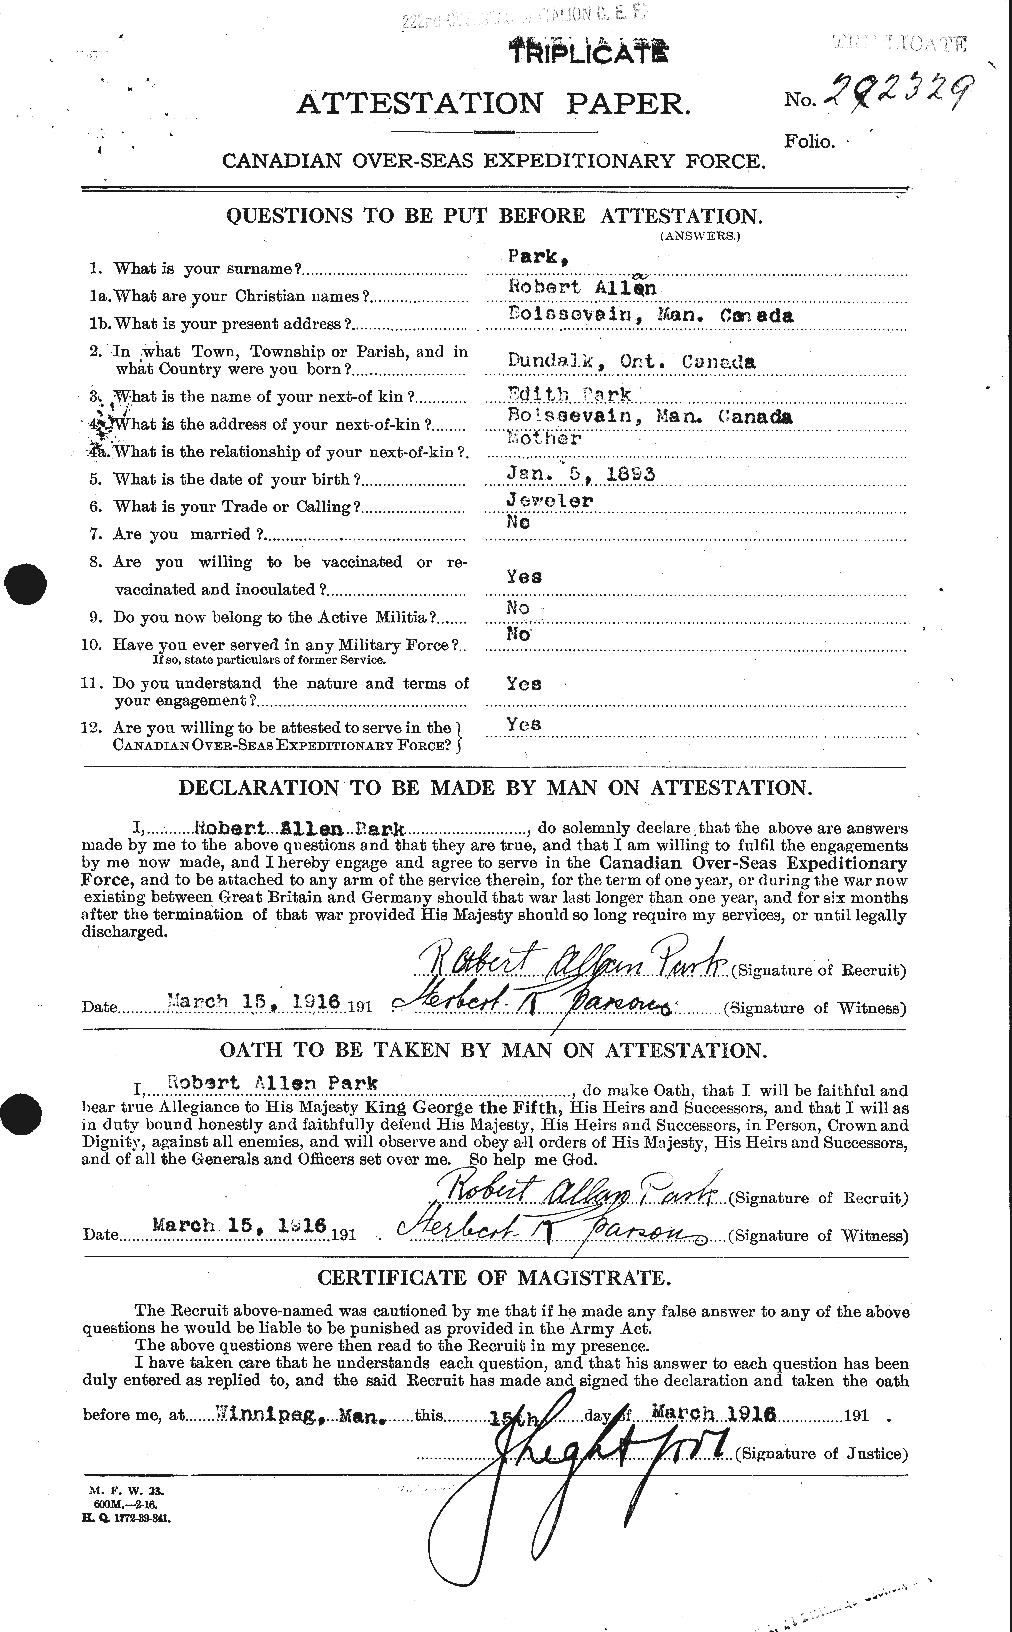 Dossiers du Personnel de la Première Guerre mondiale - CEC 564873a